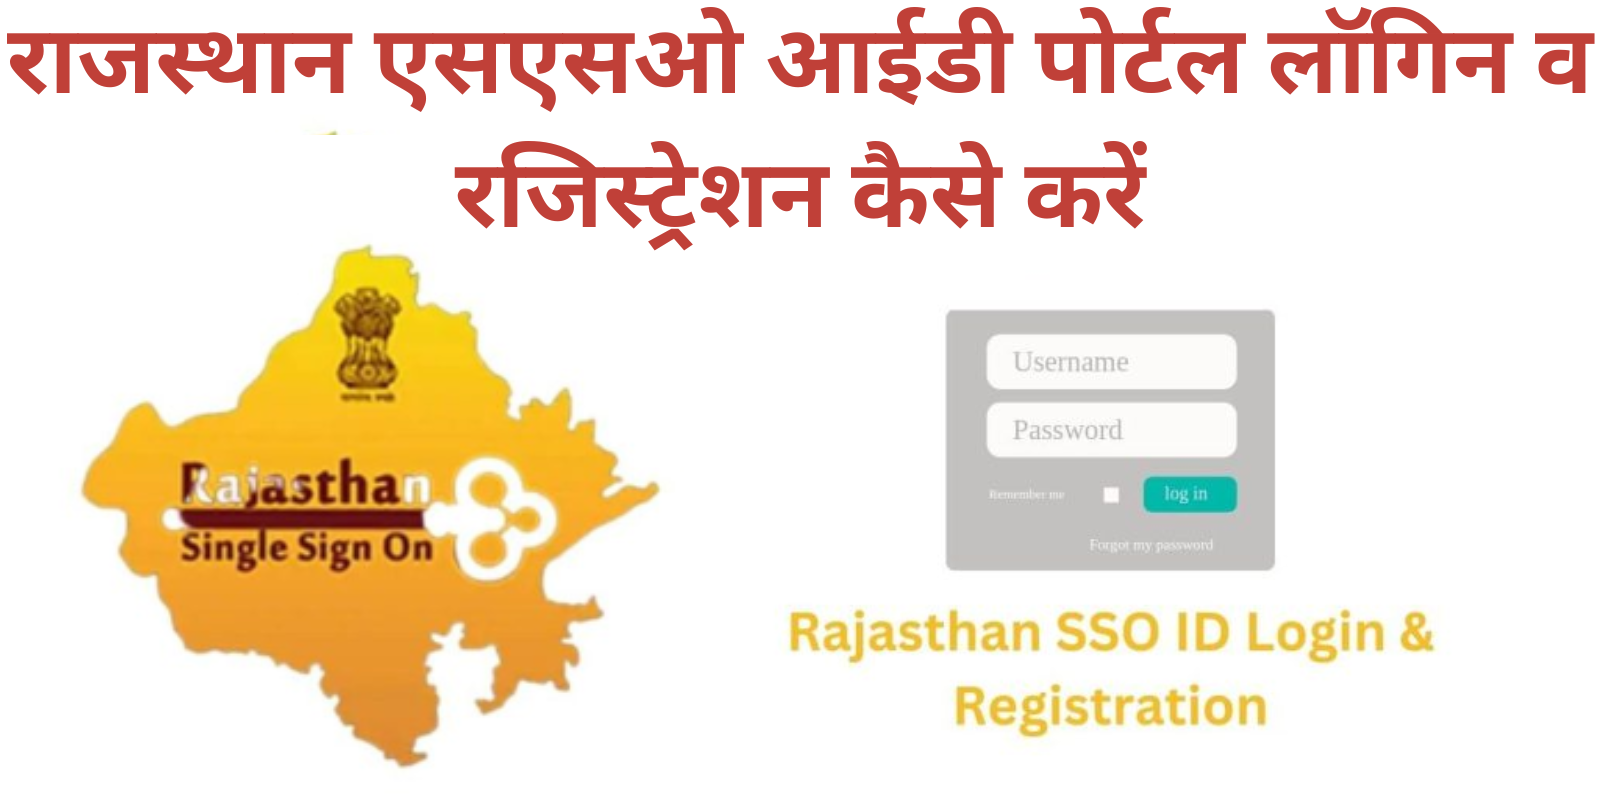 Rajasthan SSO ID Login Portal